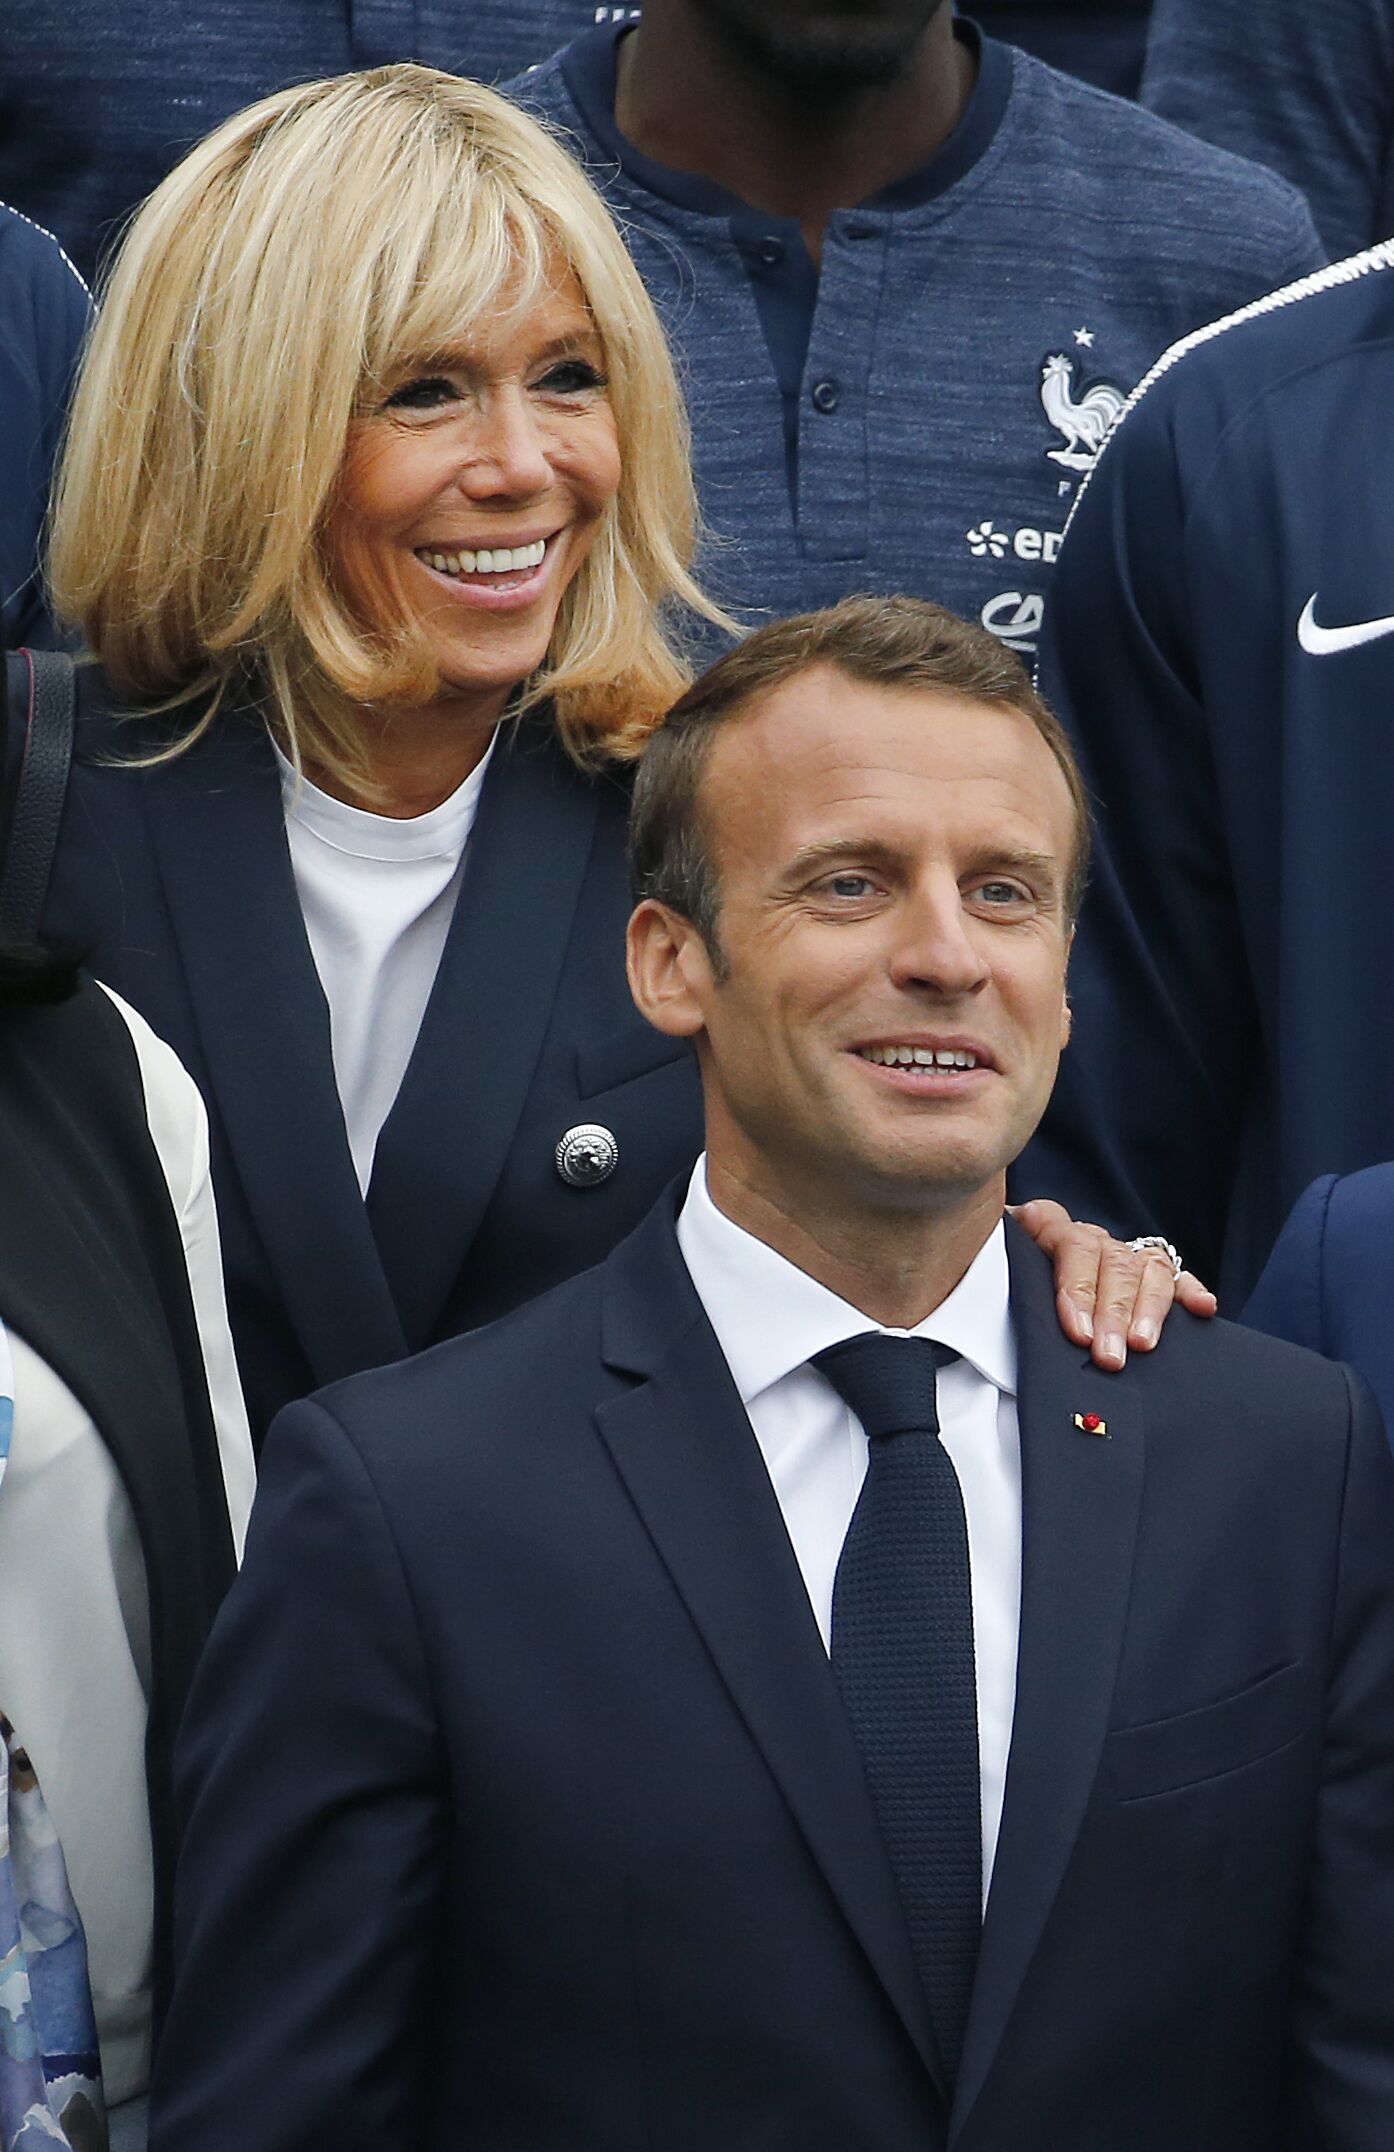 Emmanuel Macron et son épouse Brigitte Macron visite le terrain d'entraînement de l'équipe le 5 juin 2018 à Clairefontaine en Yvelines, France. [ Photo : Getty Images